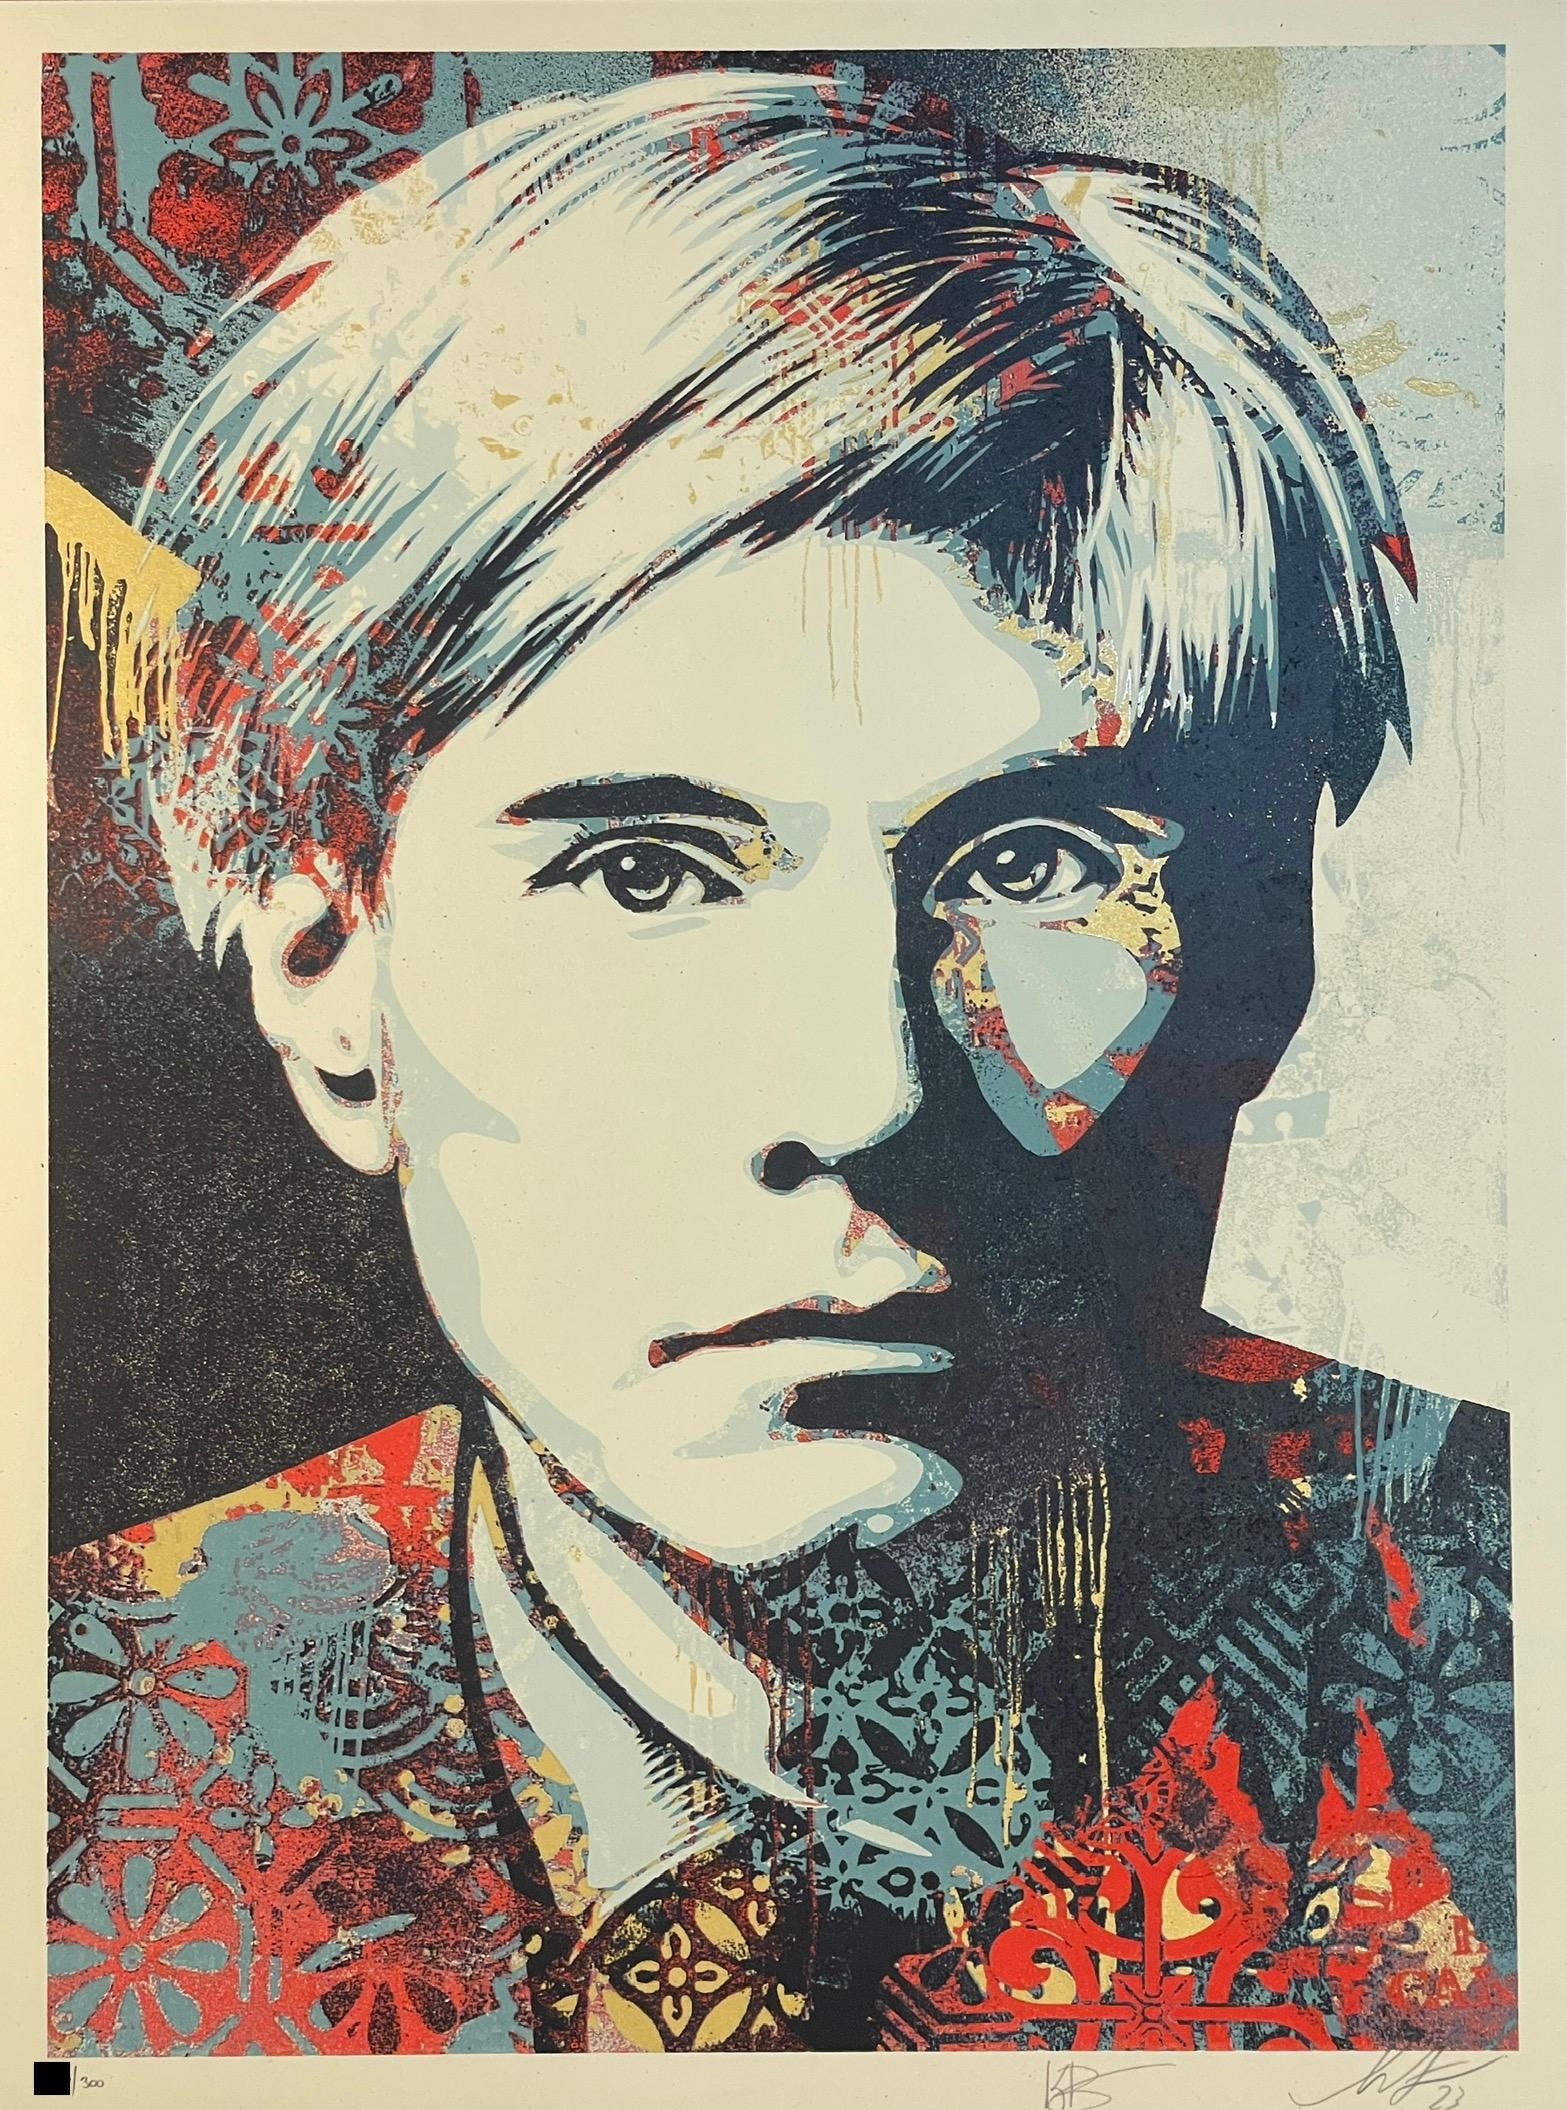 Shepard Fairey "Warhol Collage" Siebdruck Zeitgenössische Straßenkunst Obey Giant